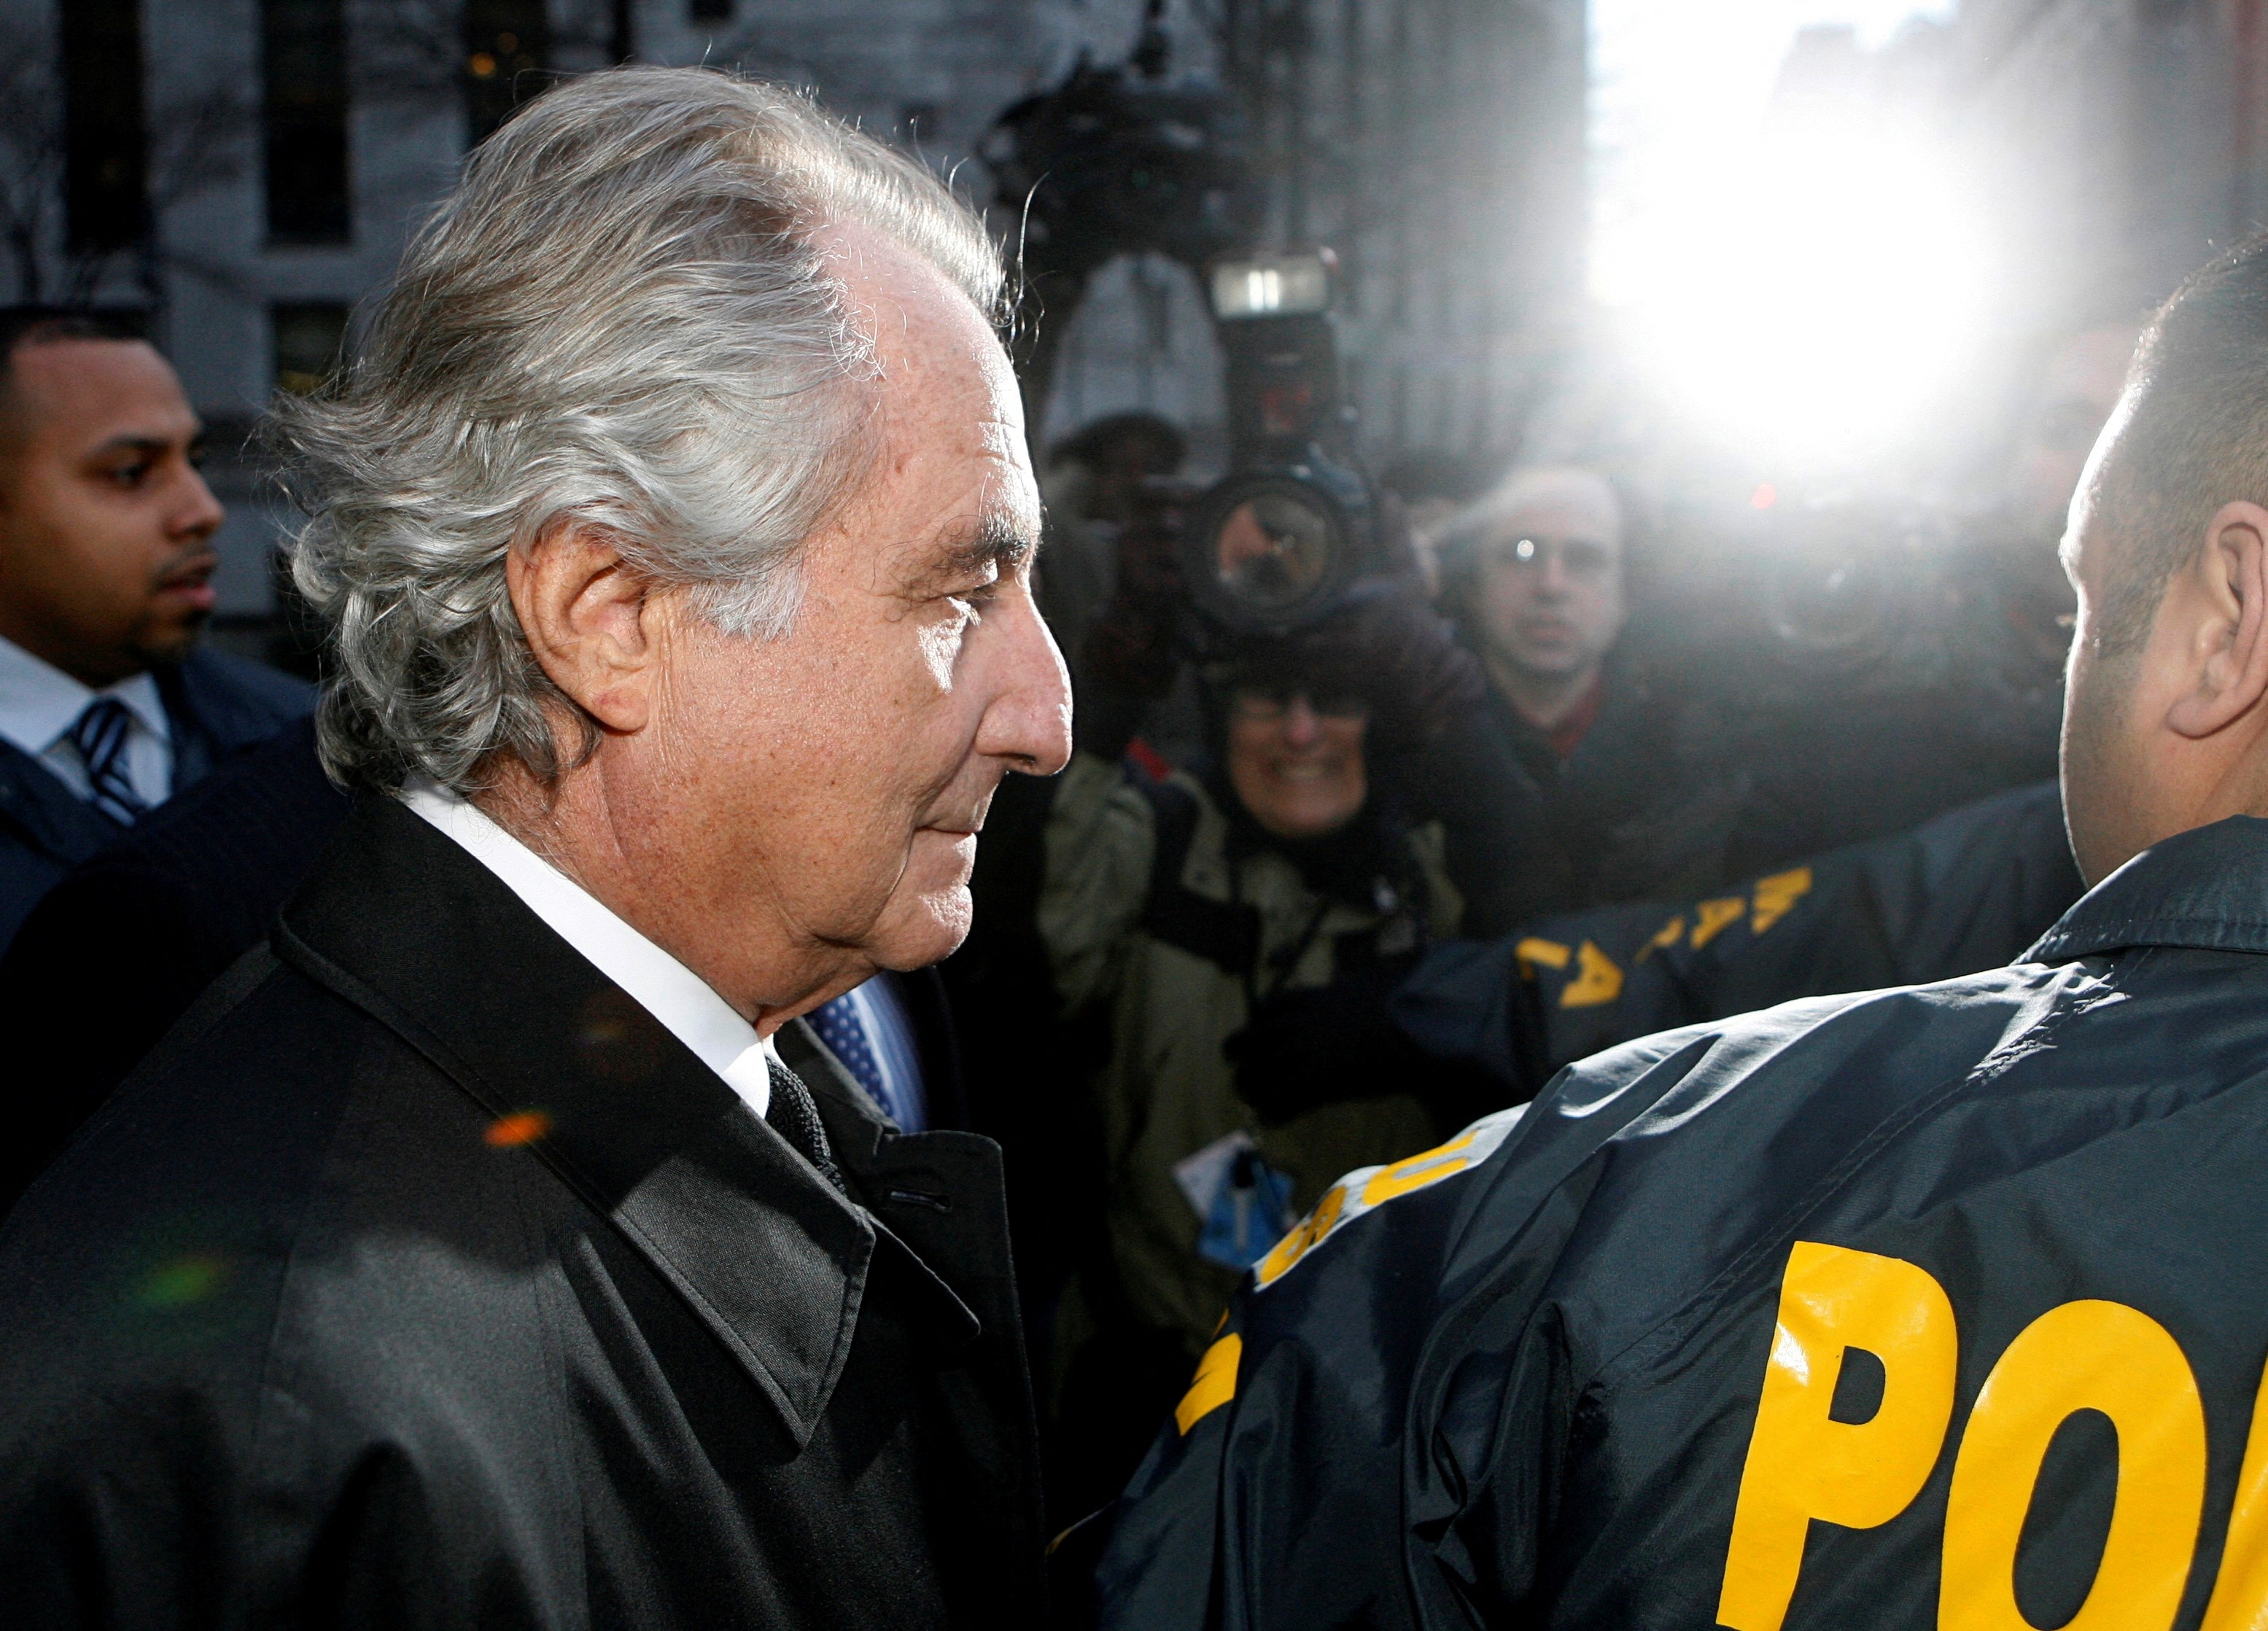 Bernie Madoff escoltado por la policía al salir de la Corte Federal de los Estados Unidos. Enjuiciado, fue condenado a 150 años de cárcel (REUTERS/Lucas Jackson/File Photo)